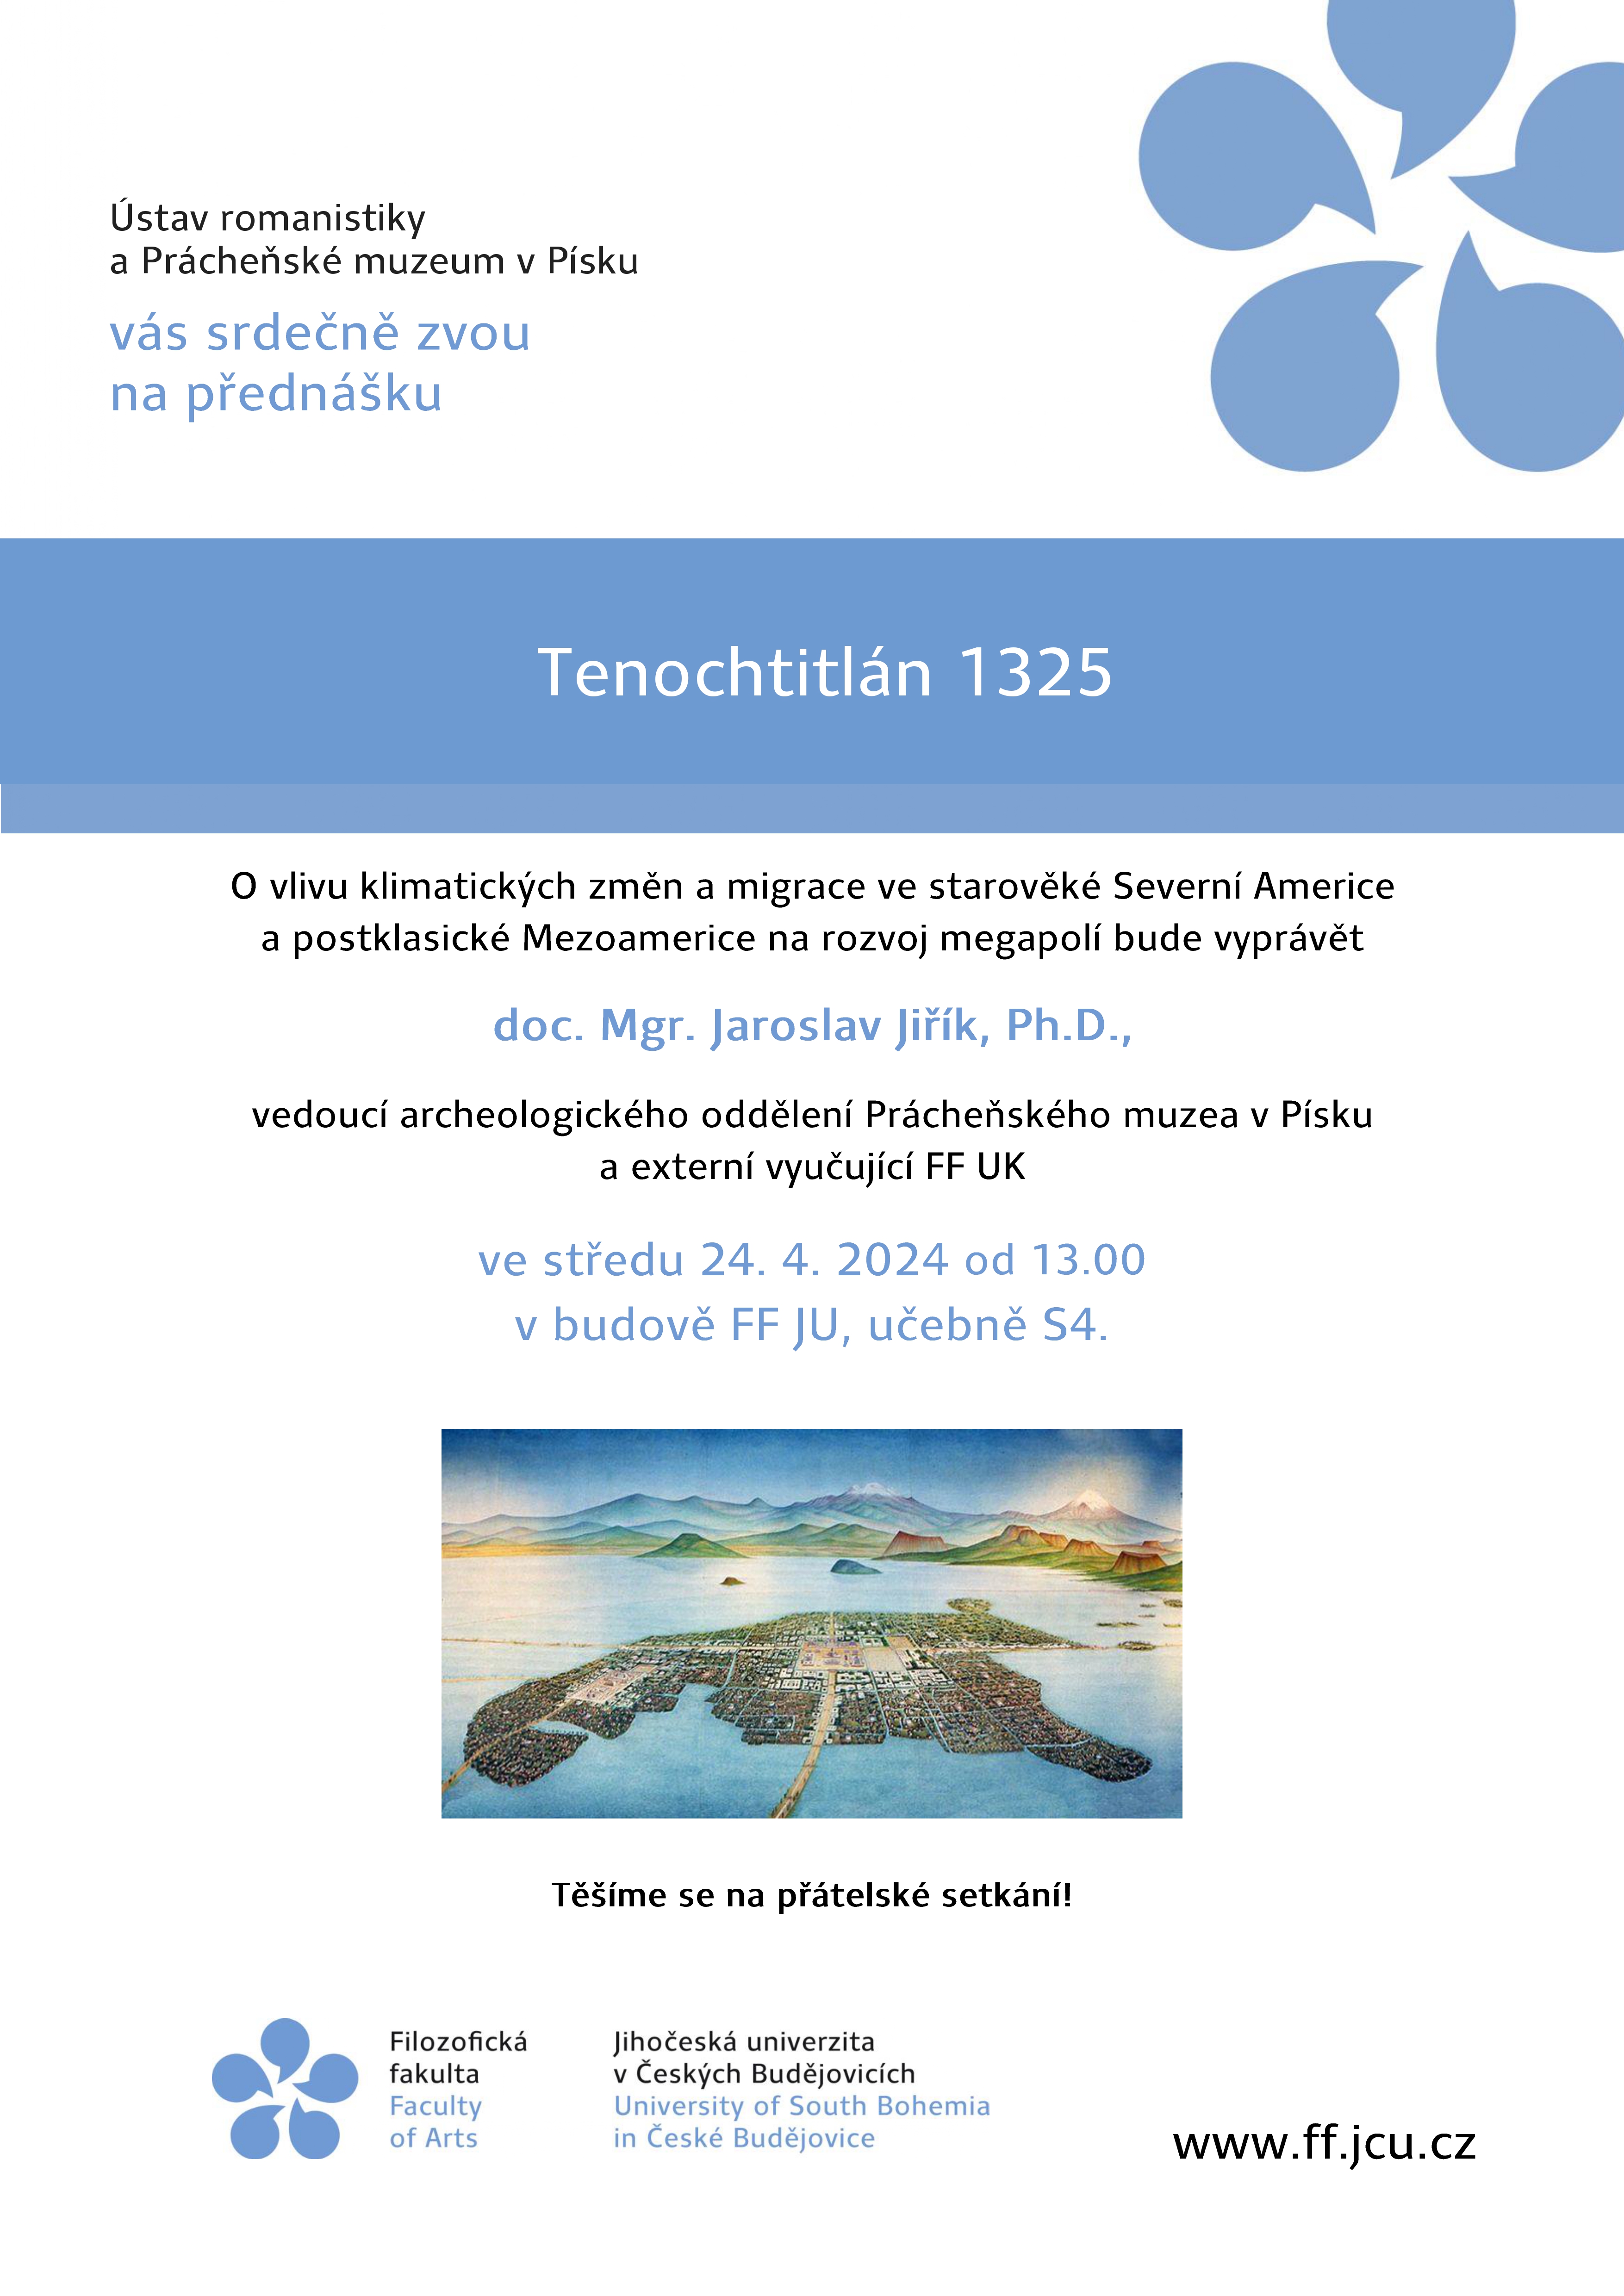 plakat_prednaska_tenochtitlan_24-04-24_page-0001